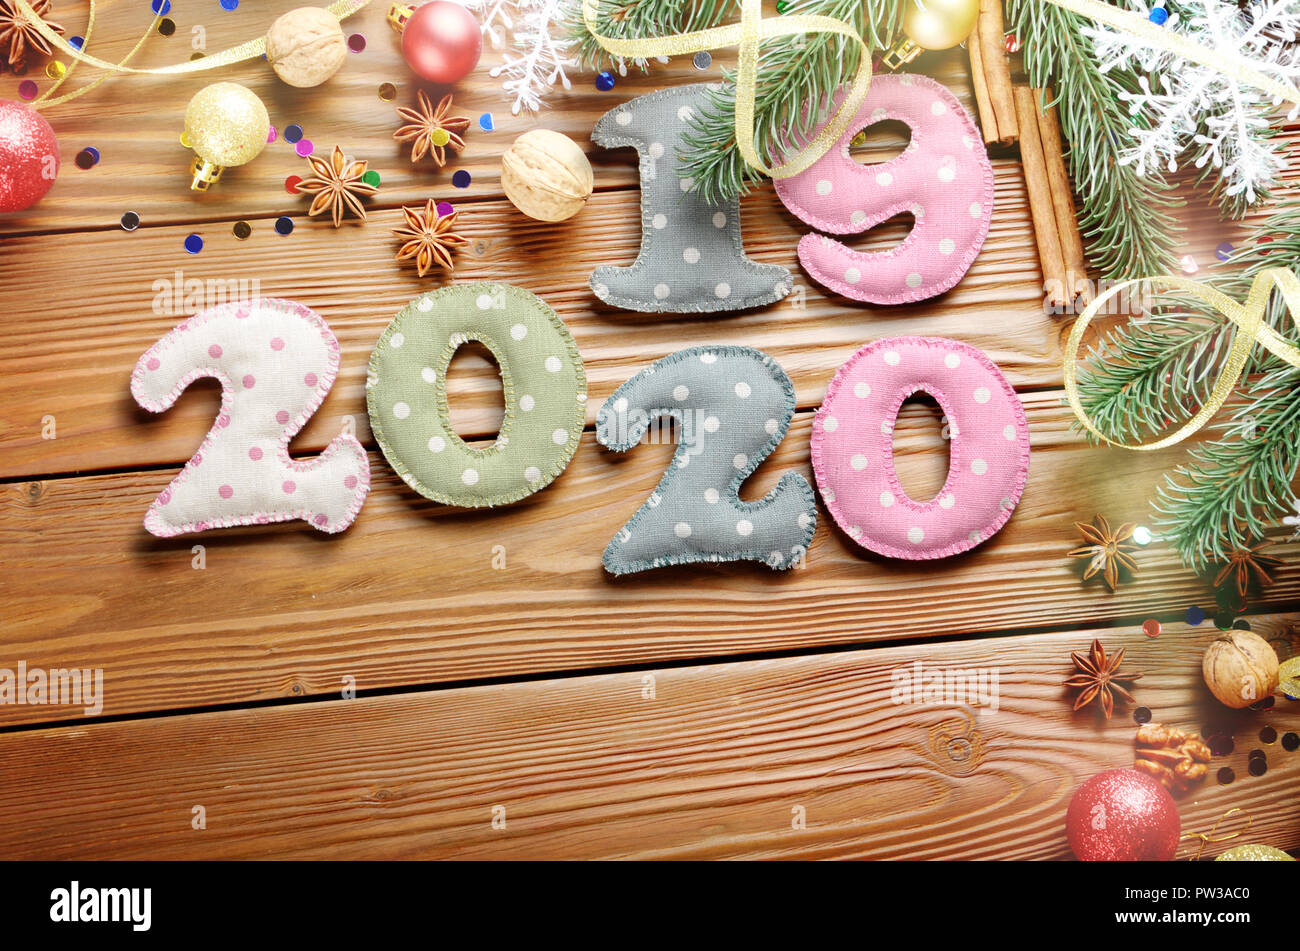 Bunte gestickte Ziffern 2019 bis 2020 polkadot Stoff mit Weihnachtsschmuck Flachbild lyed auf hölzernen Hintergrund Stockfoto